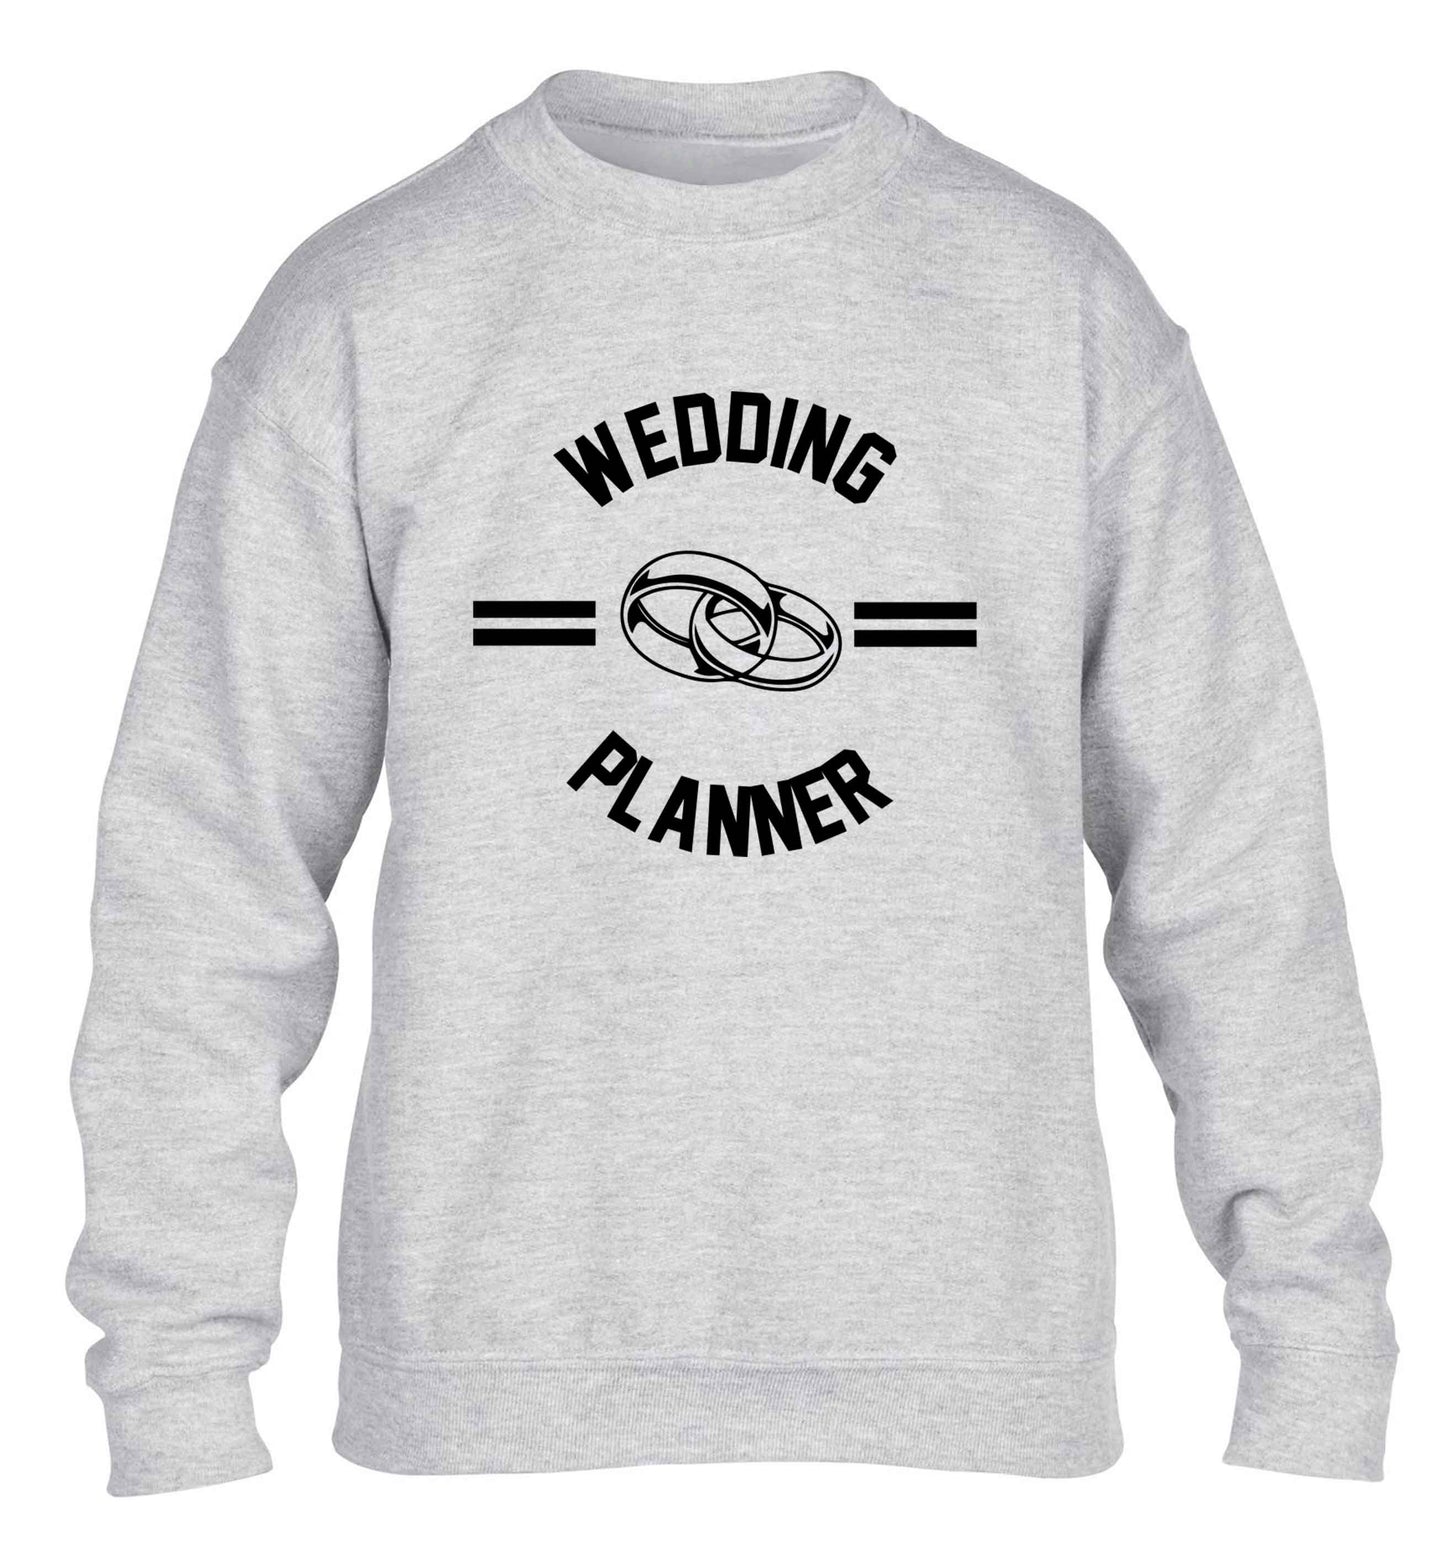 Wedding planner children's grey sweater 12-13 Years